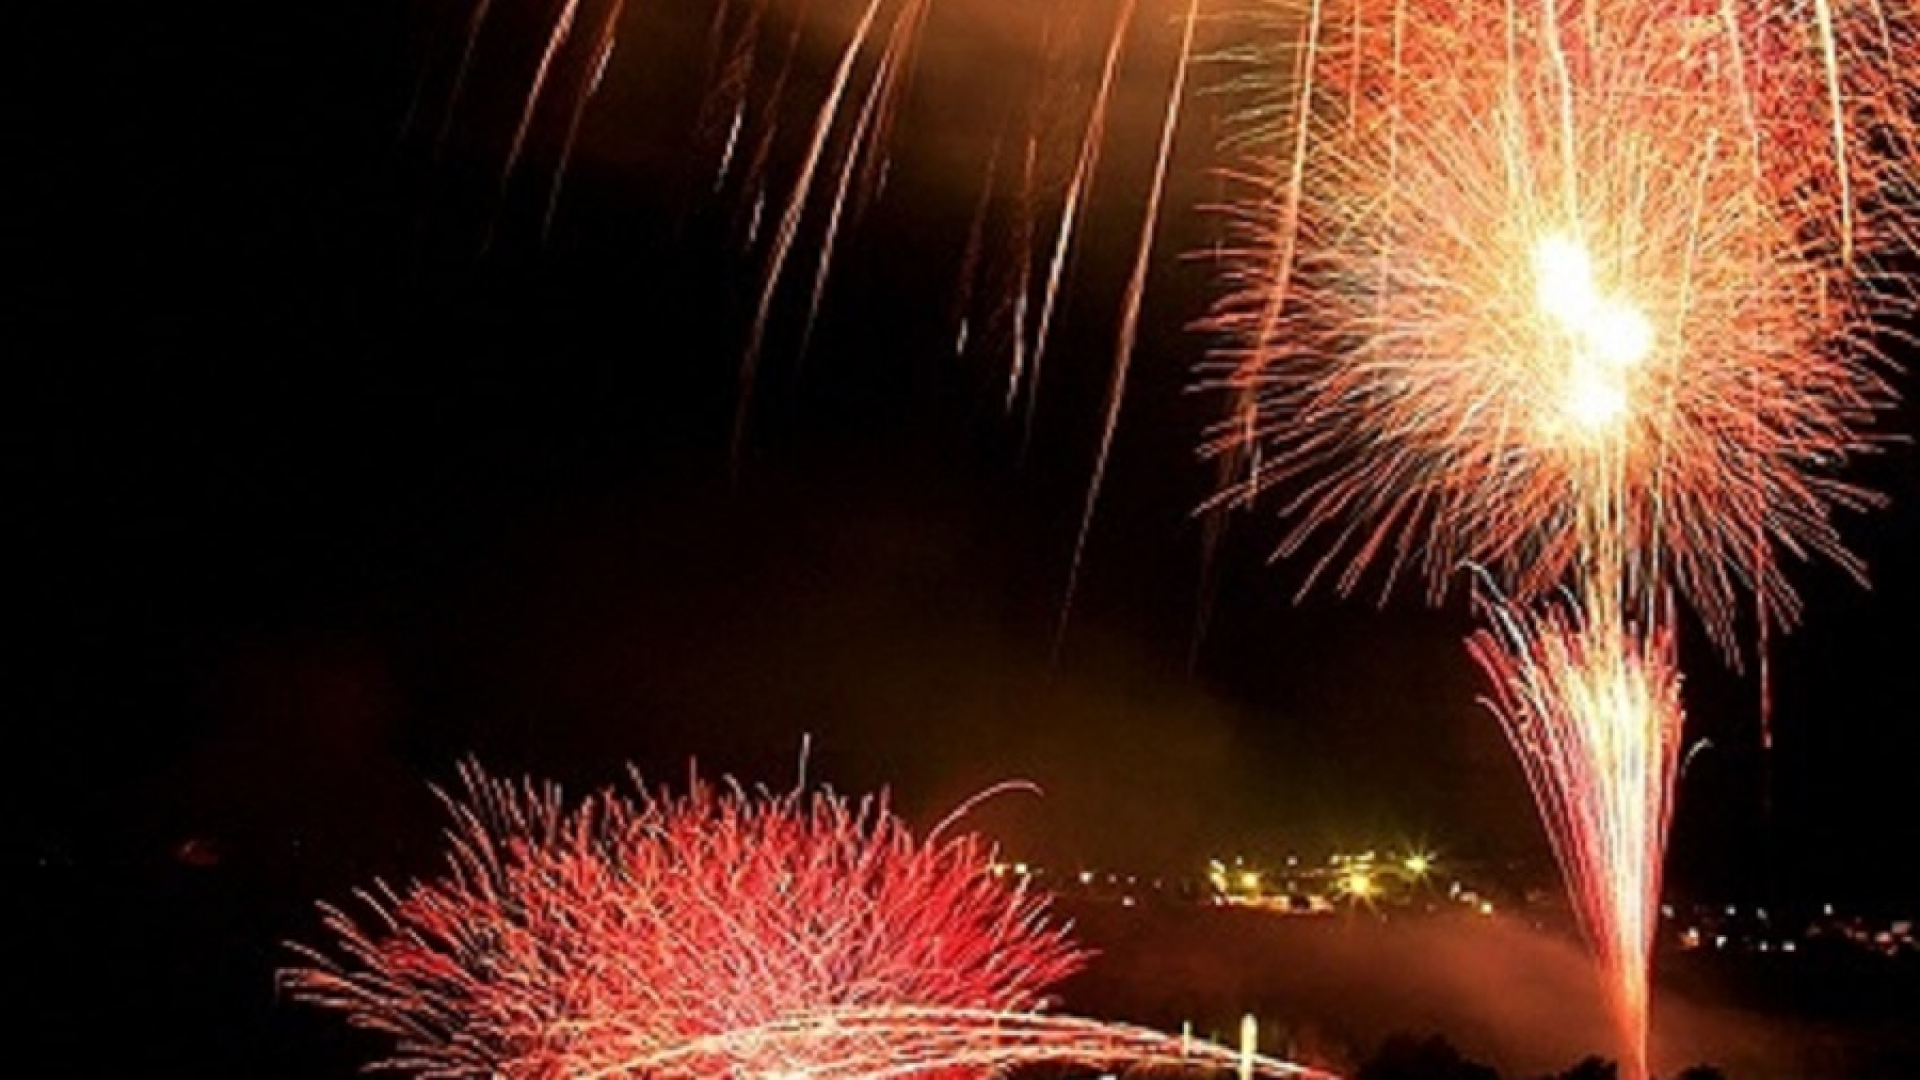 Lake Tanzawa Fireworks Festival